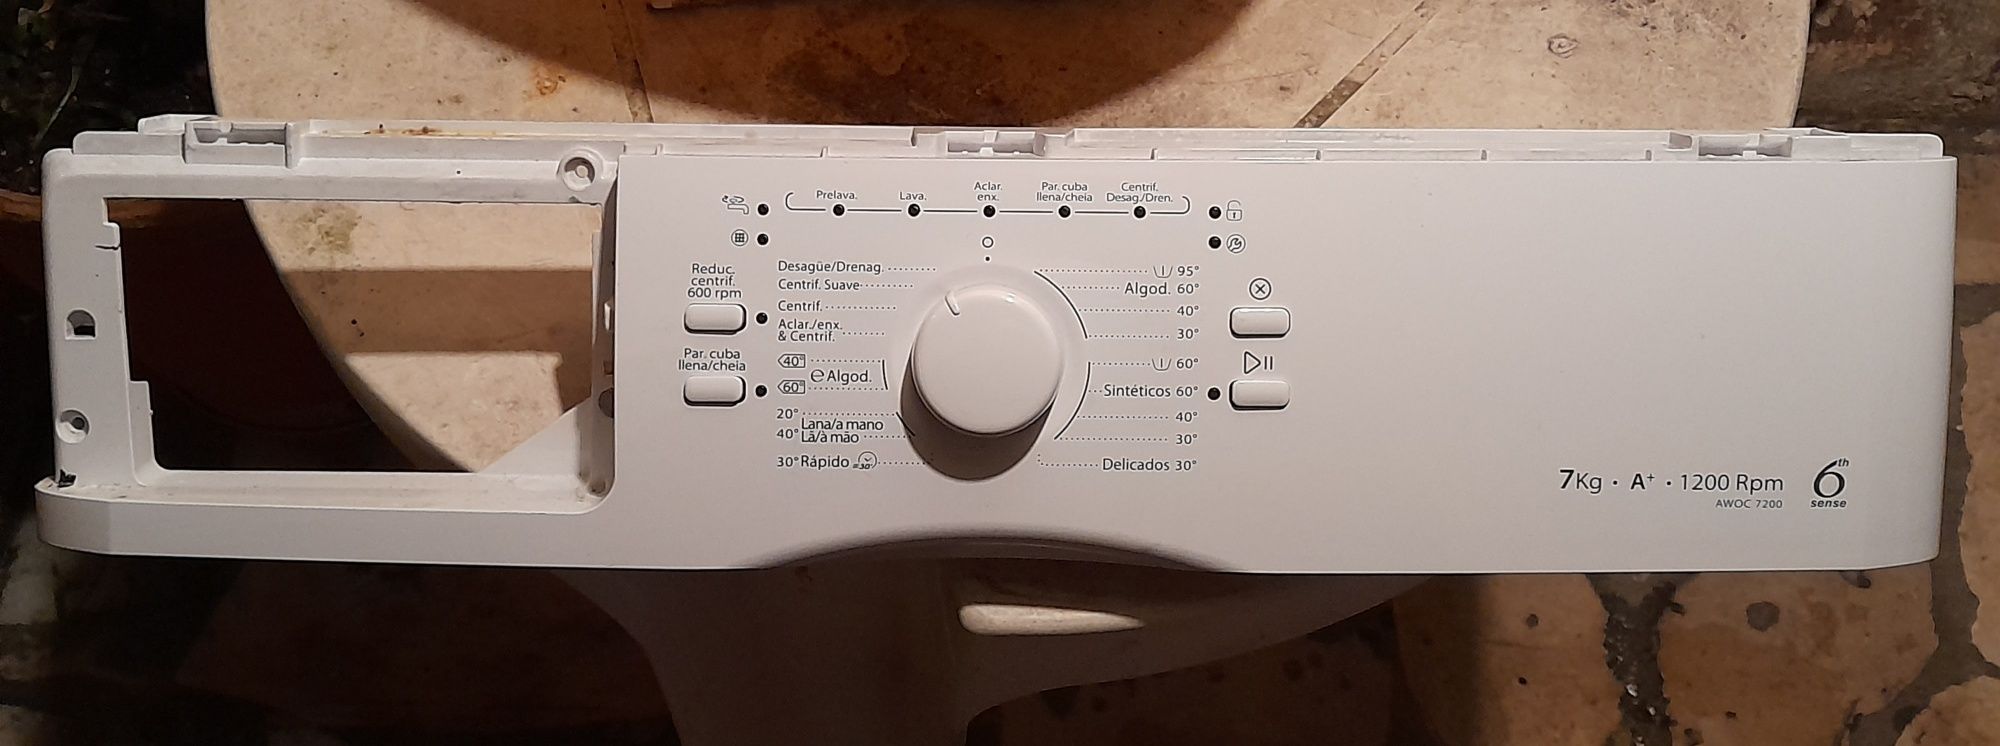 Painel de controle para maquina de lavar Whirlpool AWOC 7200